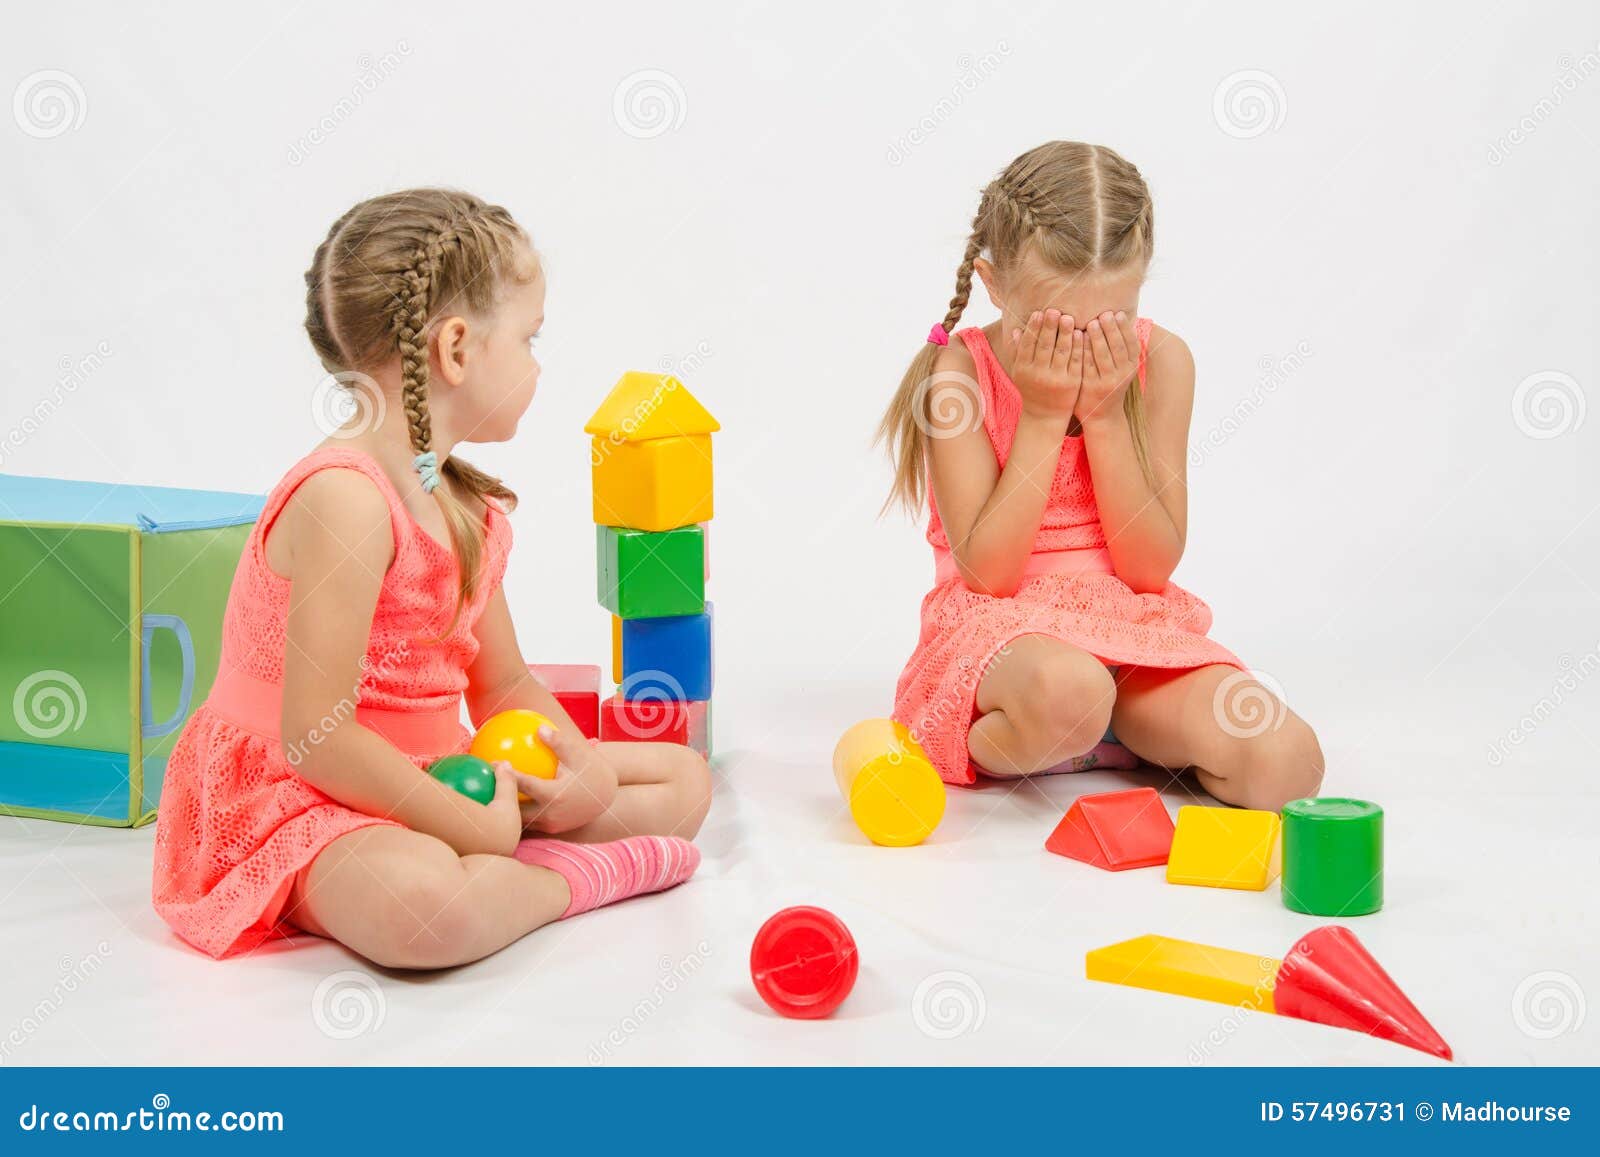 Детки играют с кисками. Девочка играется с игрушками. Девушка играется с игрушками. Девушка играет с игрушками. Девочки играют.